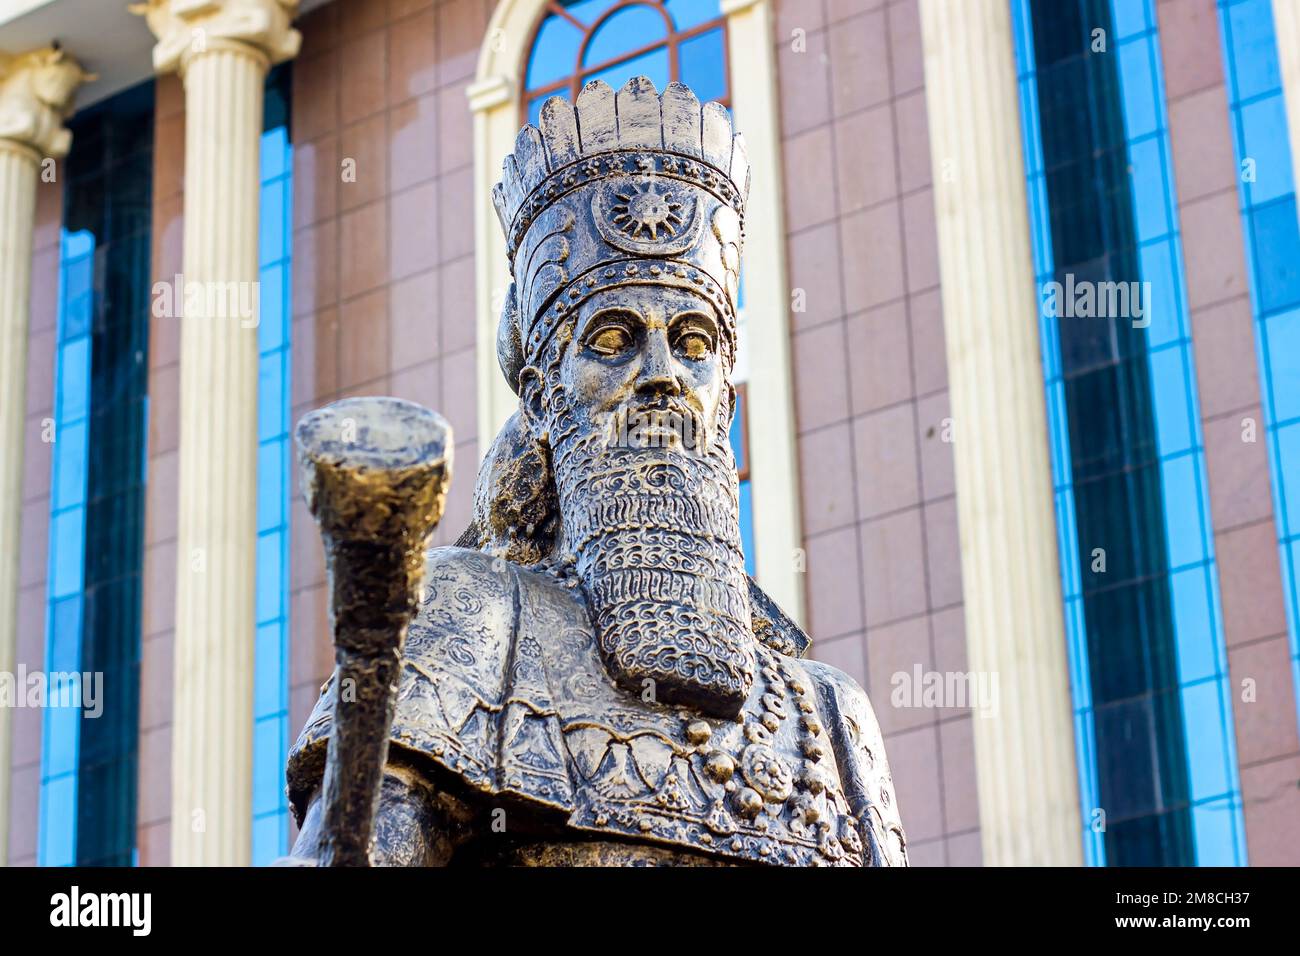 DUSCHANBE, TADSCHIKISTAN - 2. JULI 2022: Die Bronzestatue von Cyrus dem Großen (Cyrus der Ältere), dem Gründer des Achämenienreiches, dem ersten persischen Em Stockfoto